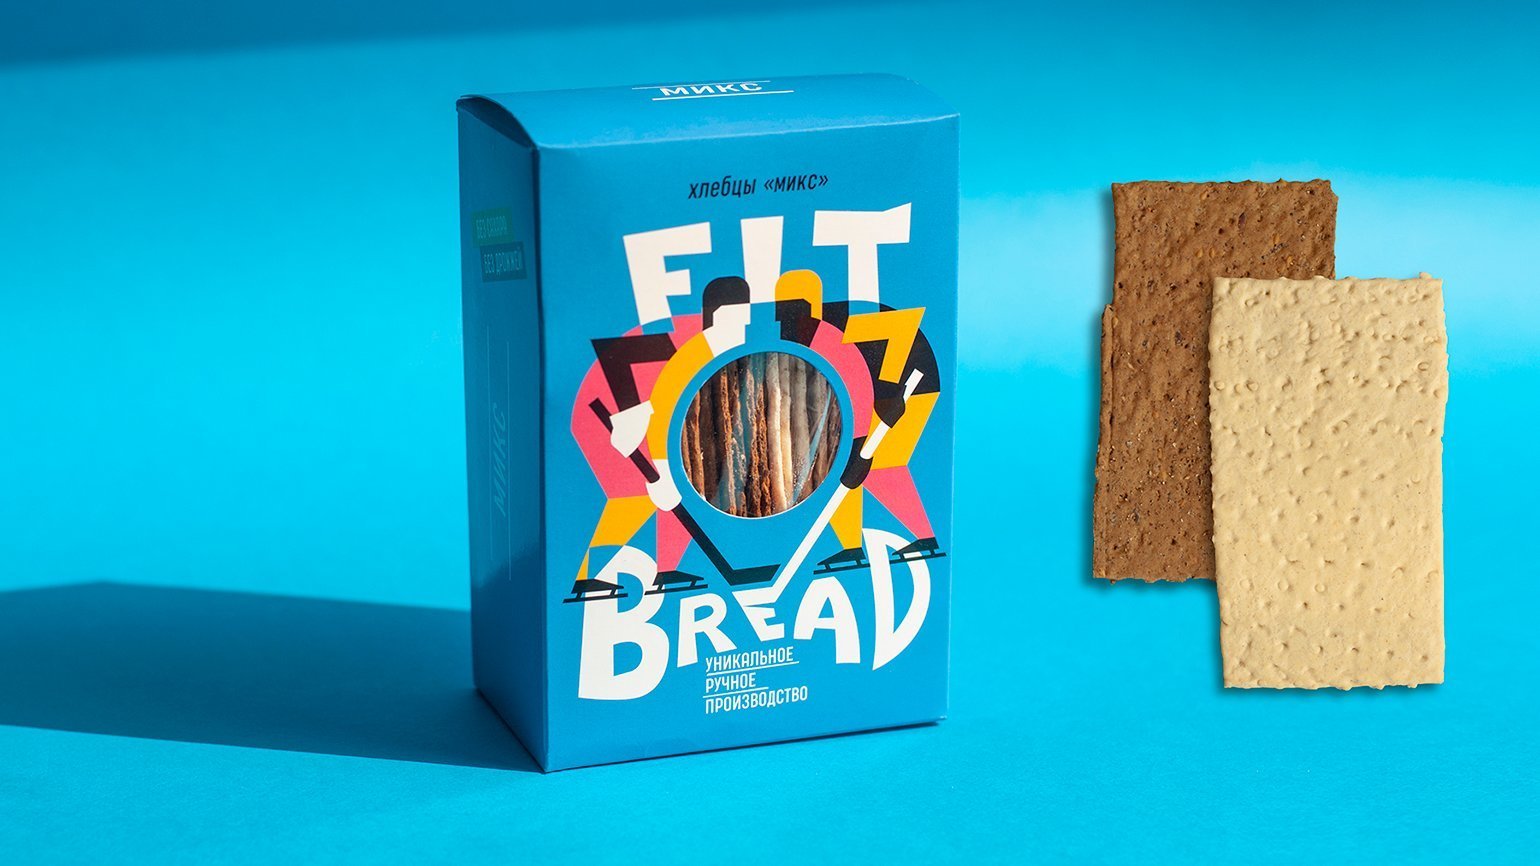 Дизайн упаковки диетических хлебцев. На упаковках изображены условные иллюстрации хоккеистов